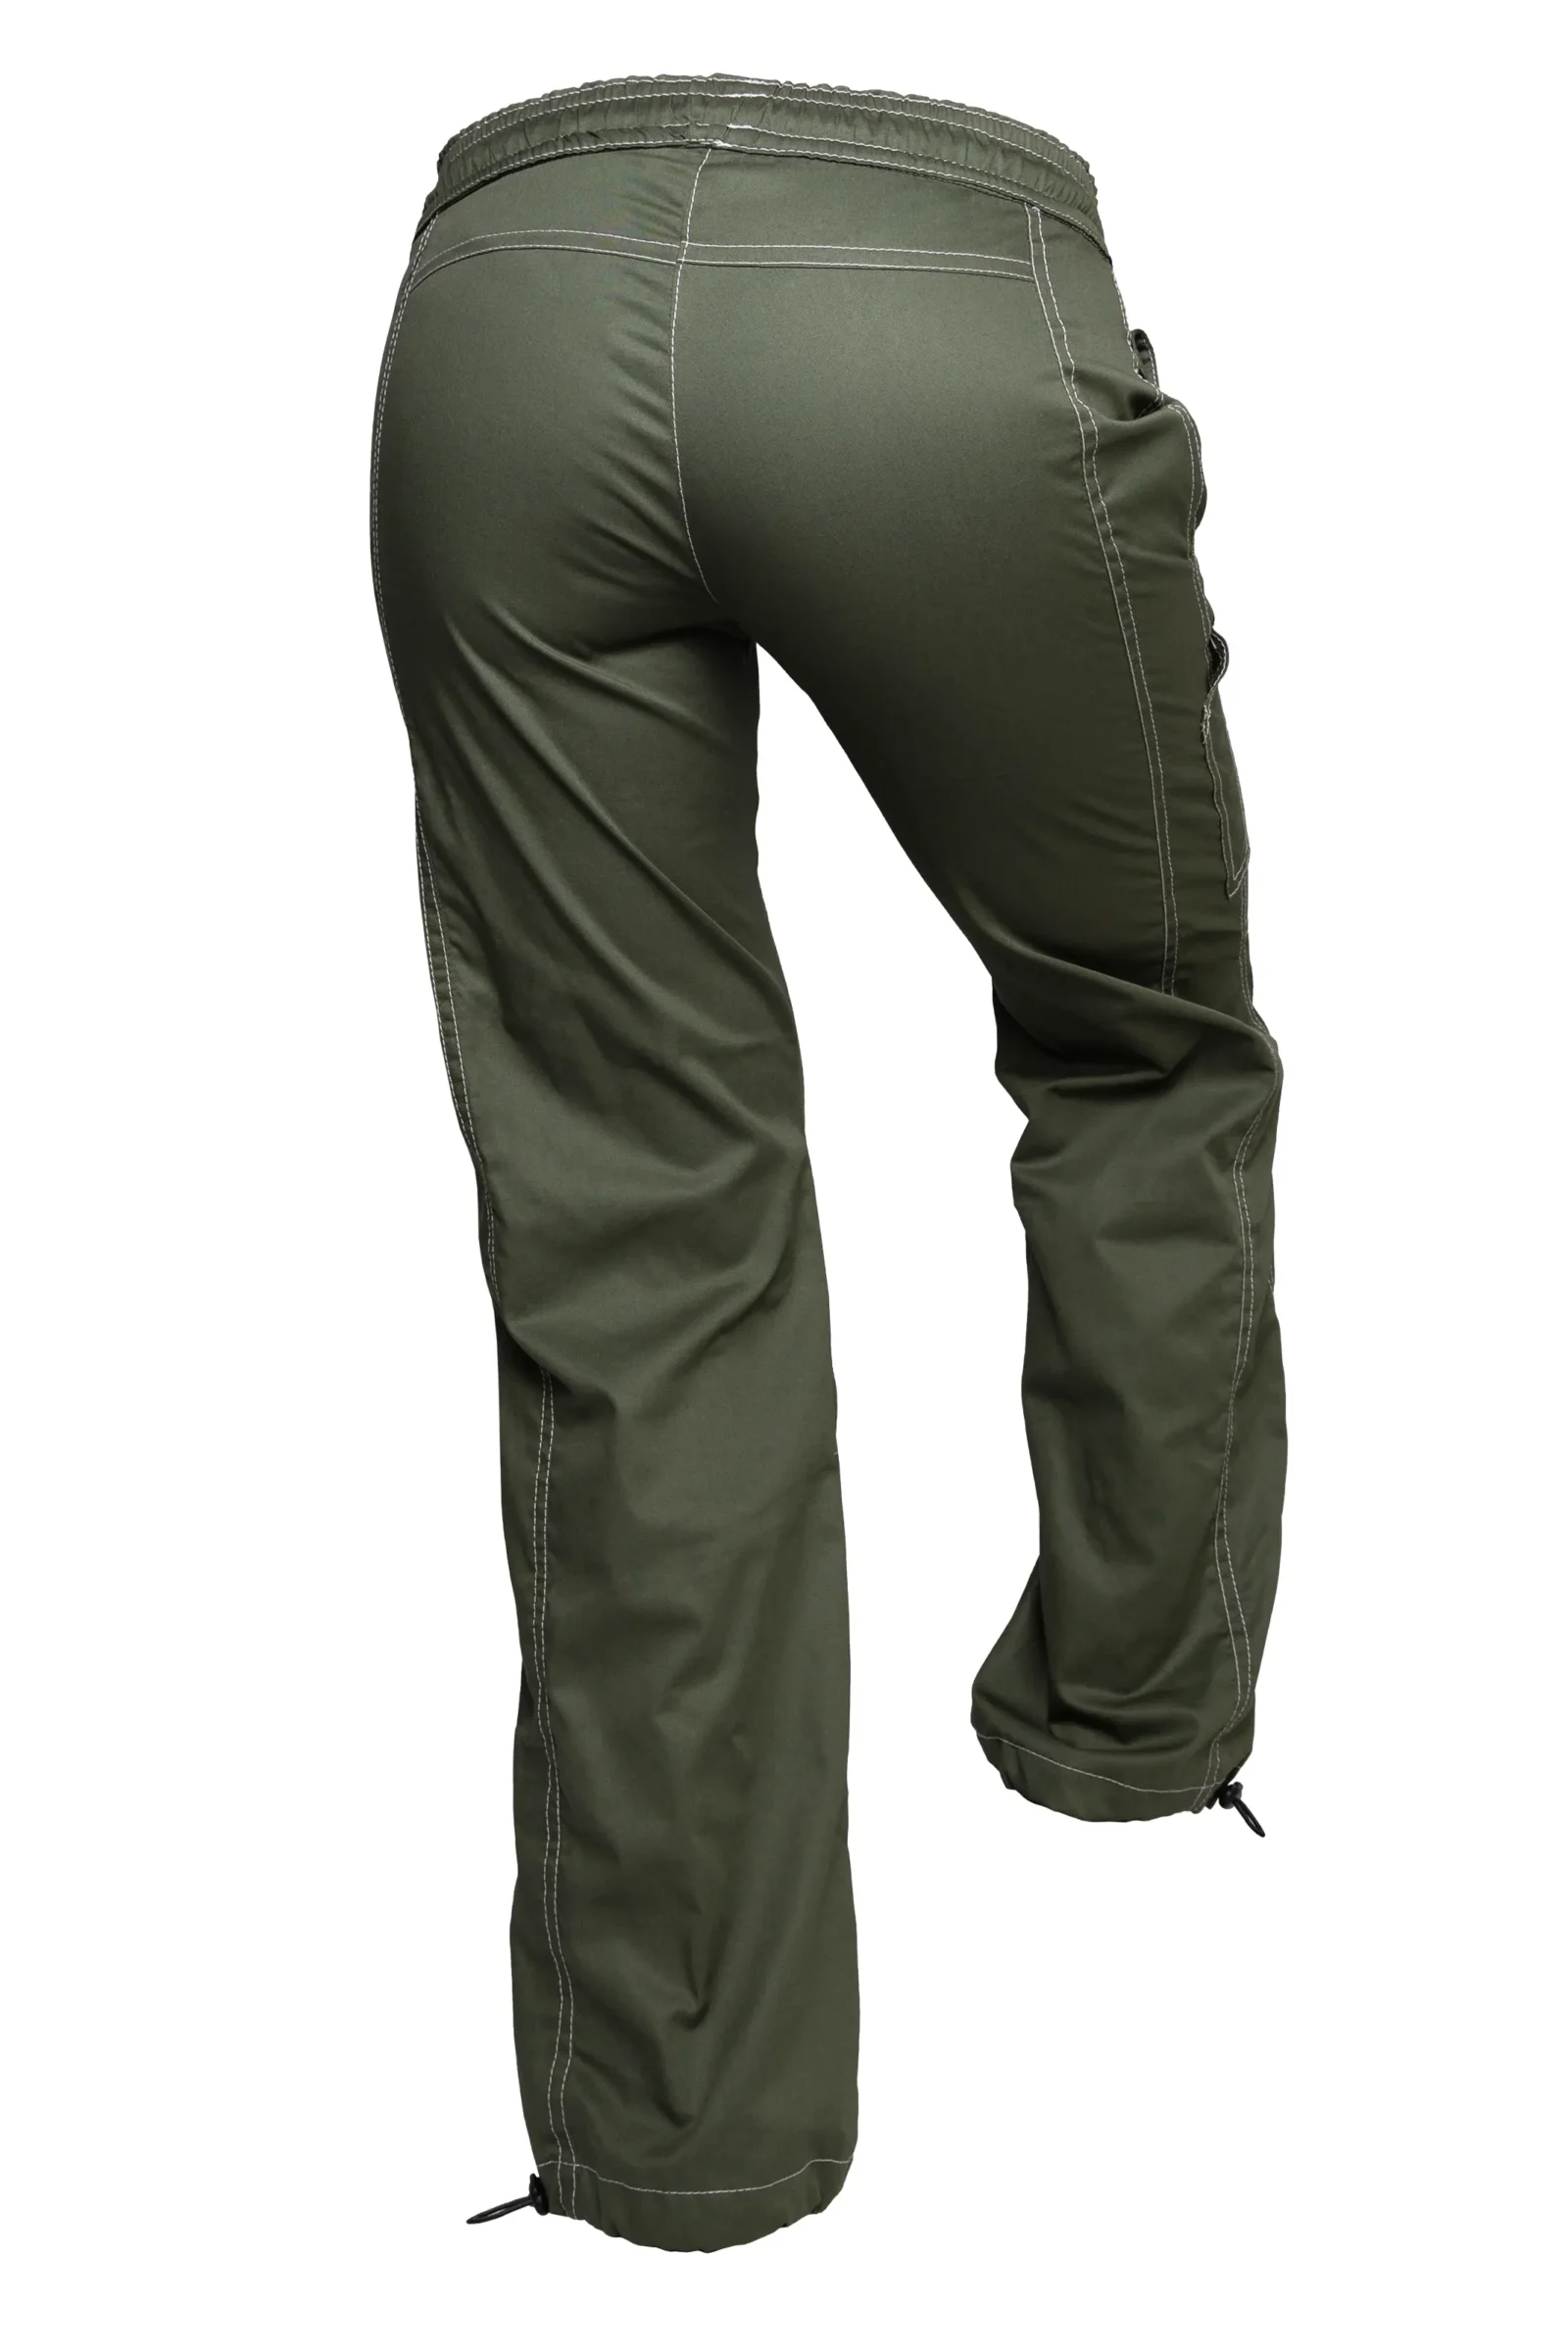 Pantalon de sport femme - vert militaire - VIOLET Monvic